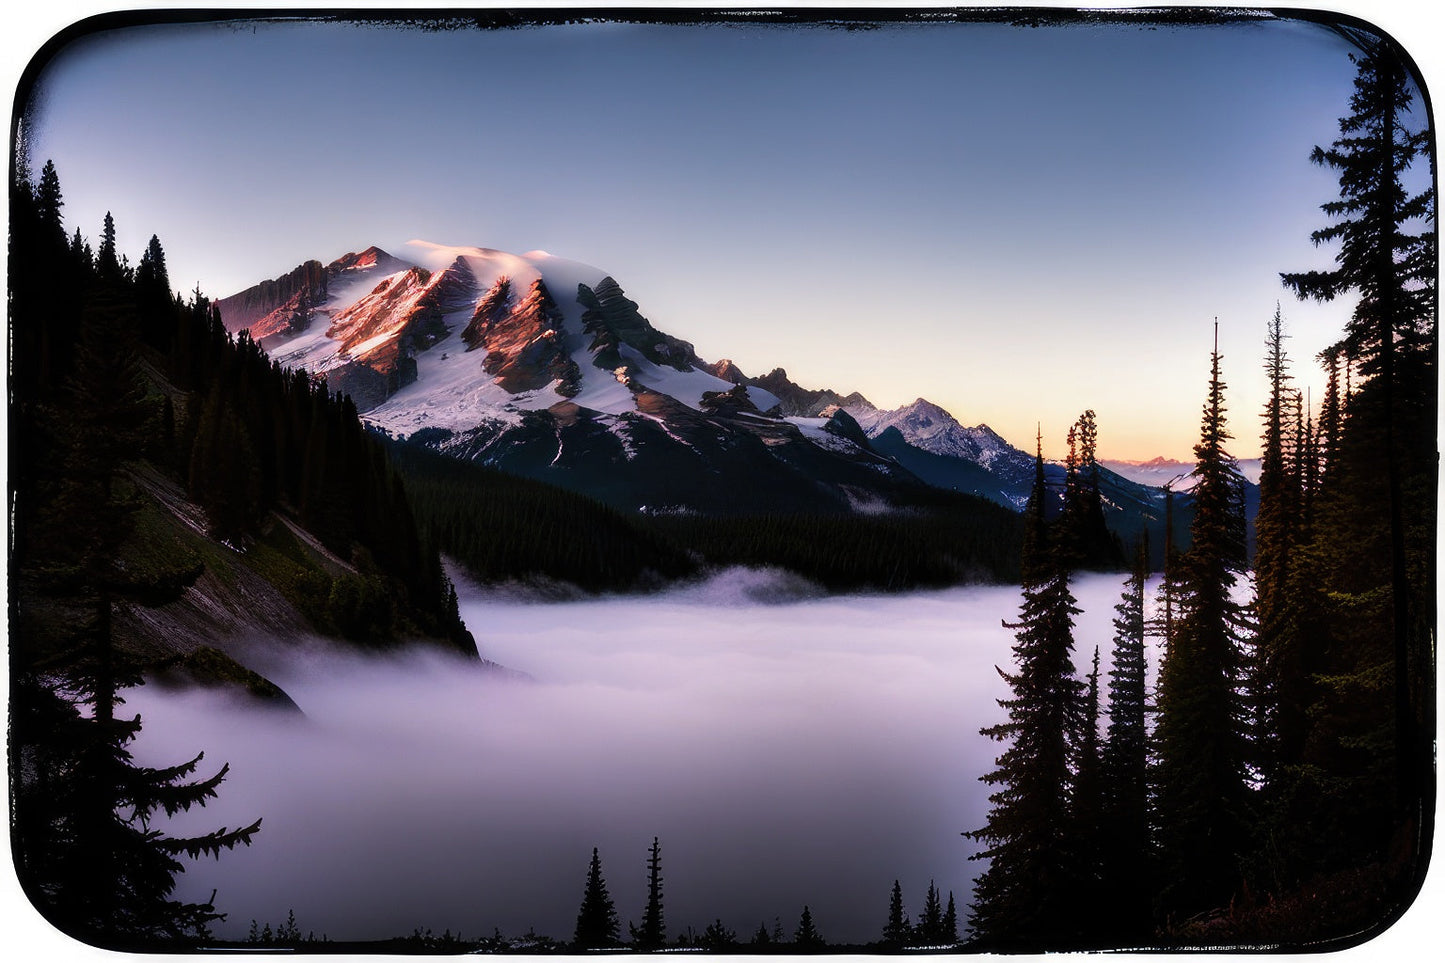 Mount Rainier Scenic Landscape Photo I Art Print